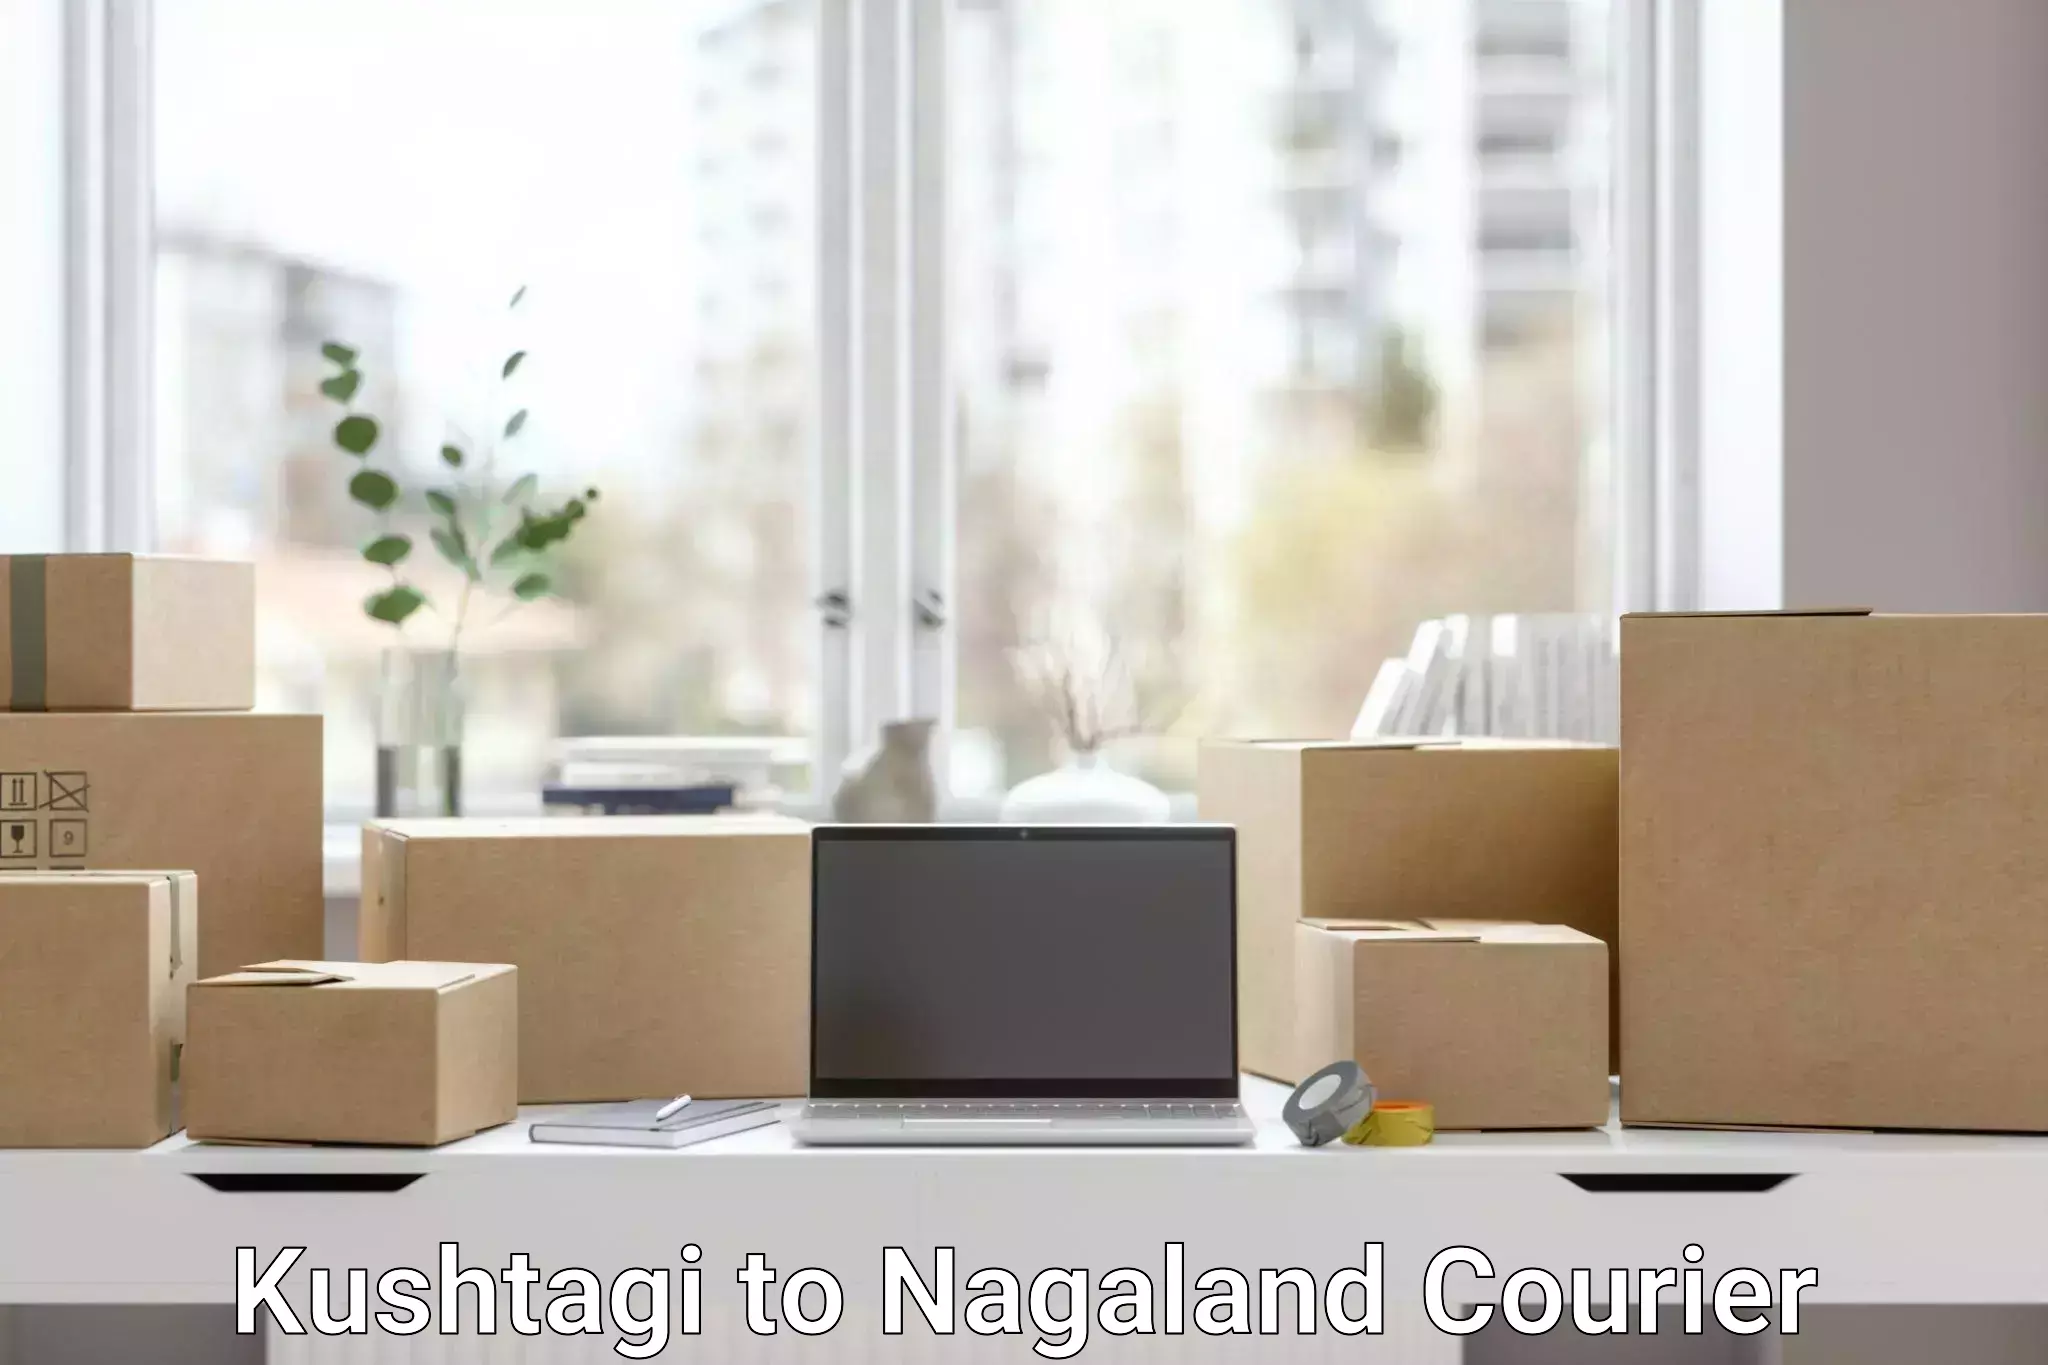 Cargo delivery service Kushtagi to Nagaland